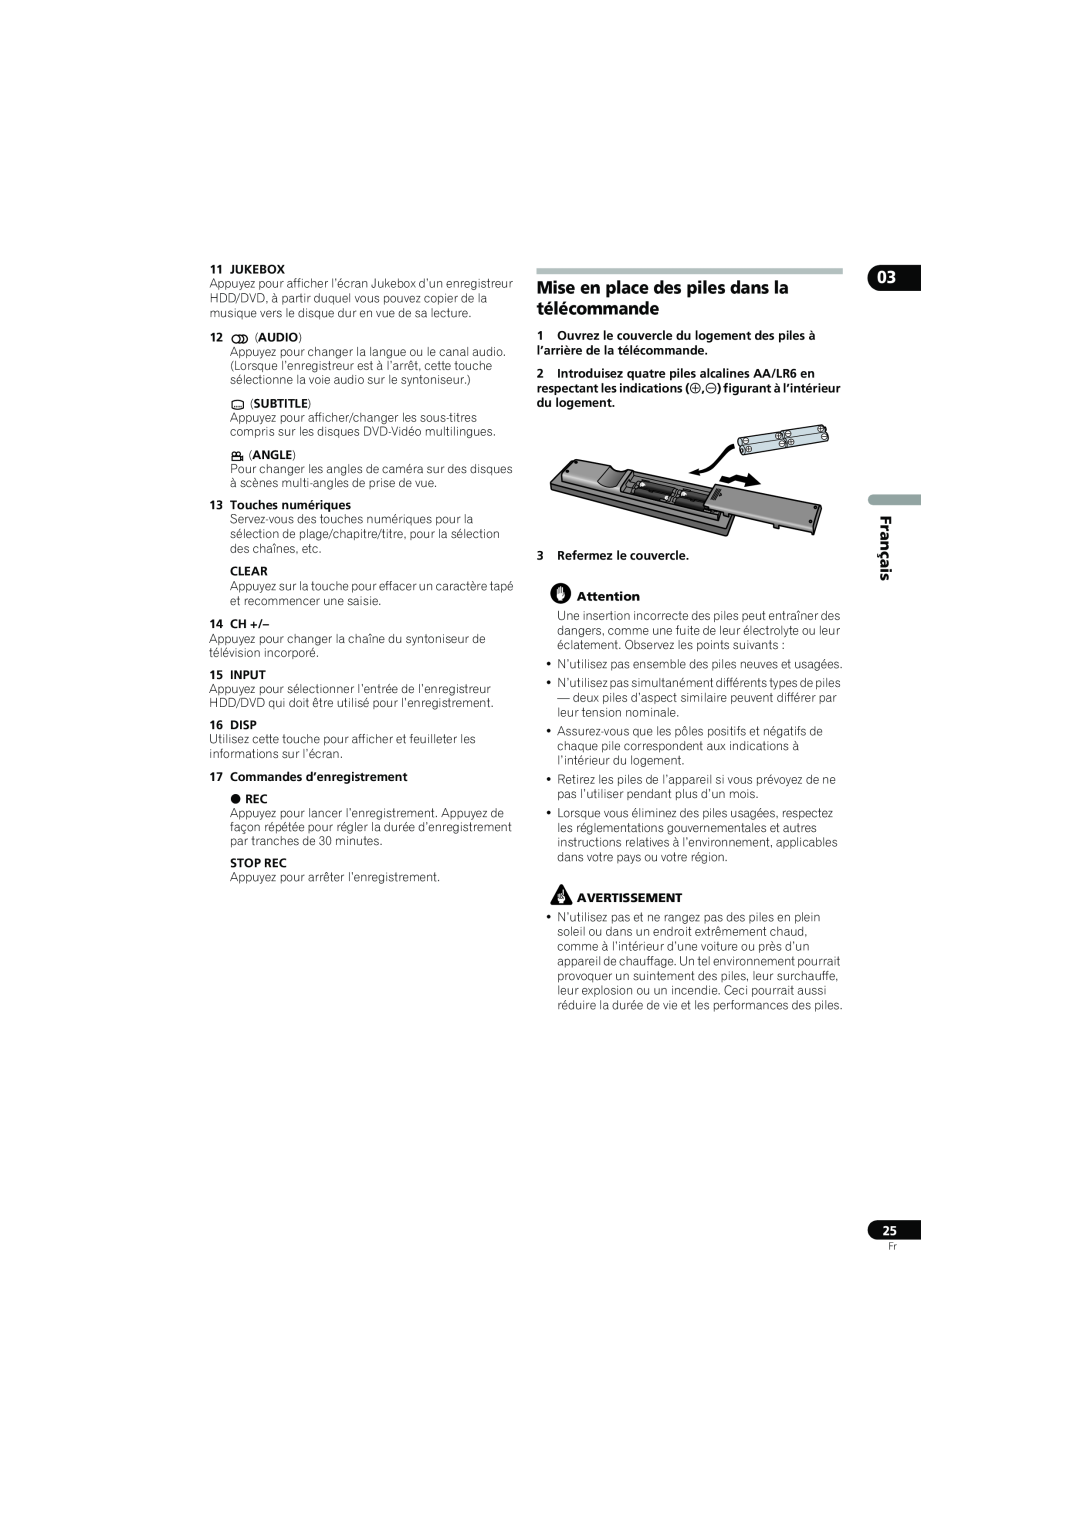 Pioneer SX-LX70SW Mise en place des piles dans la télécommande, Français, Jukebox, Audio, Subtitle, Angle, Clear, 14 CH + 